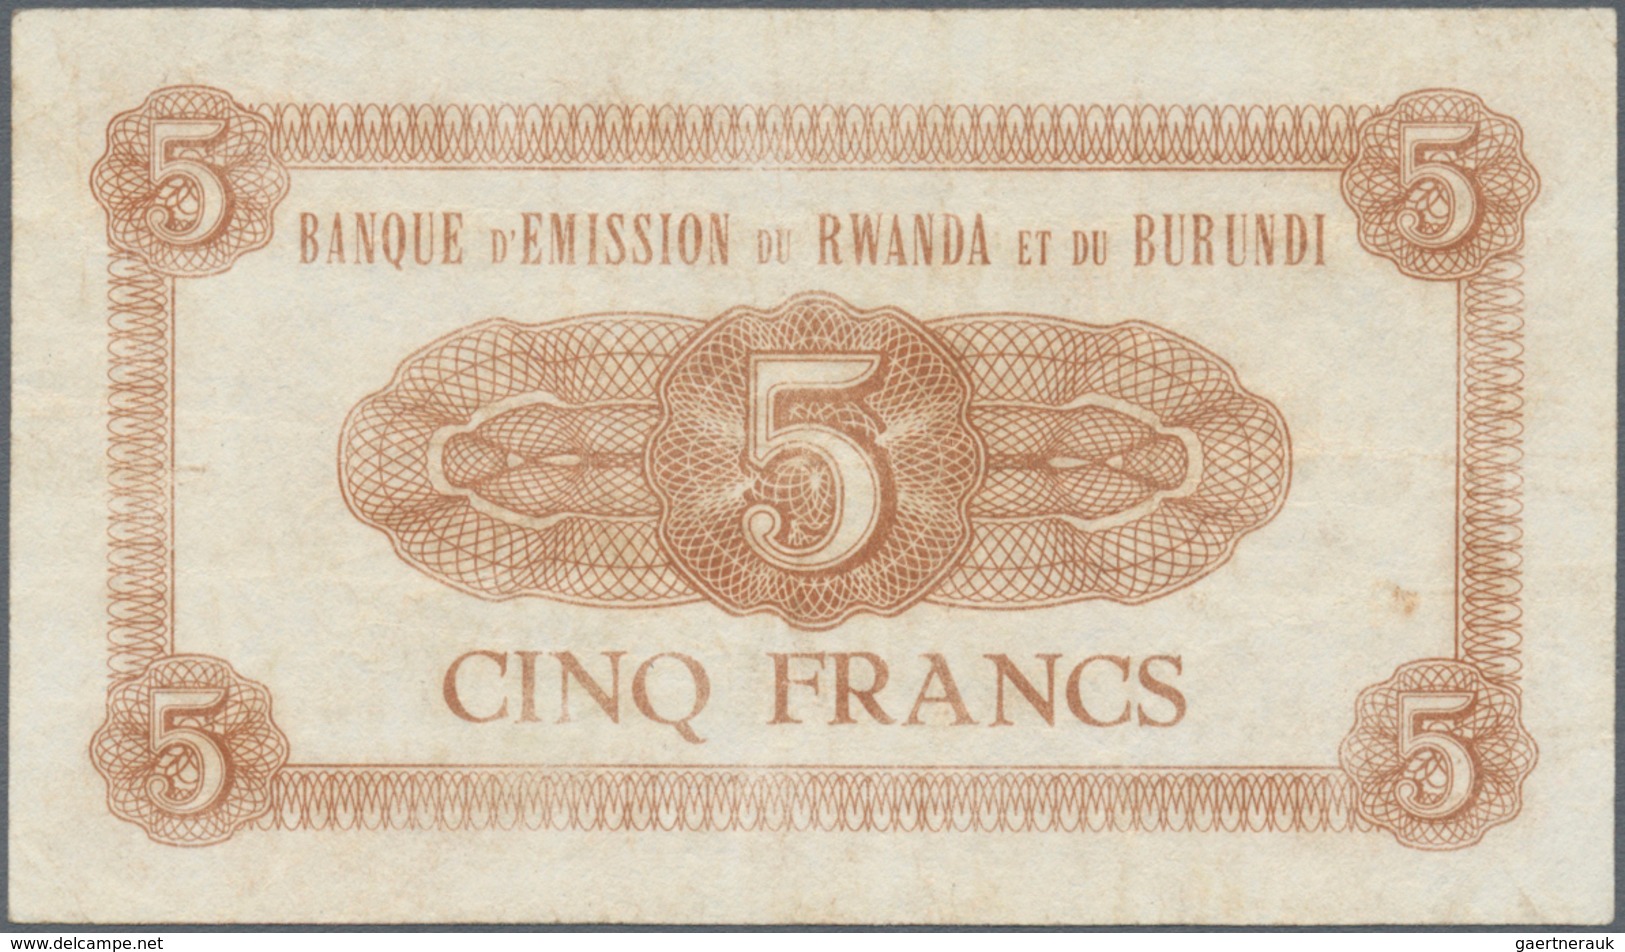 Rwanda-Burundi / Ruanda-Burundi: 5 Francs 1961 Banque D'Emission Du Rwanda Et Du Burundi P. 1, Used - Ruanda-Urundi